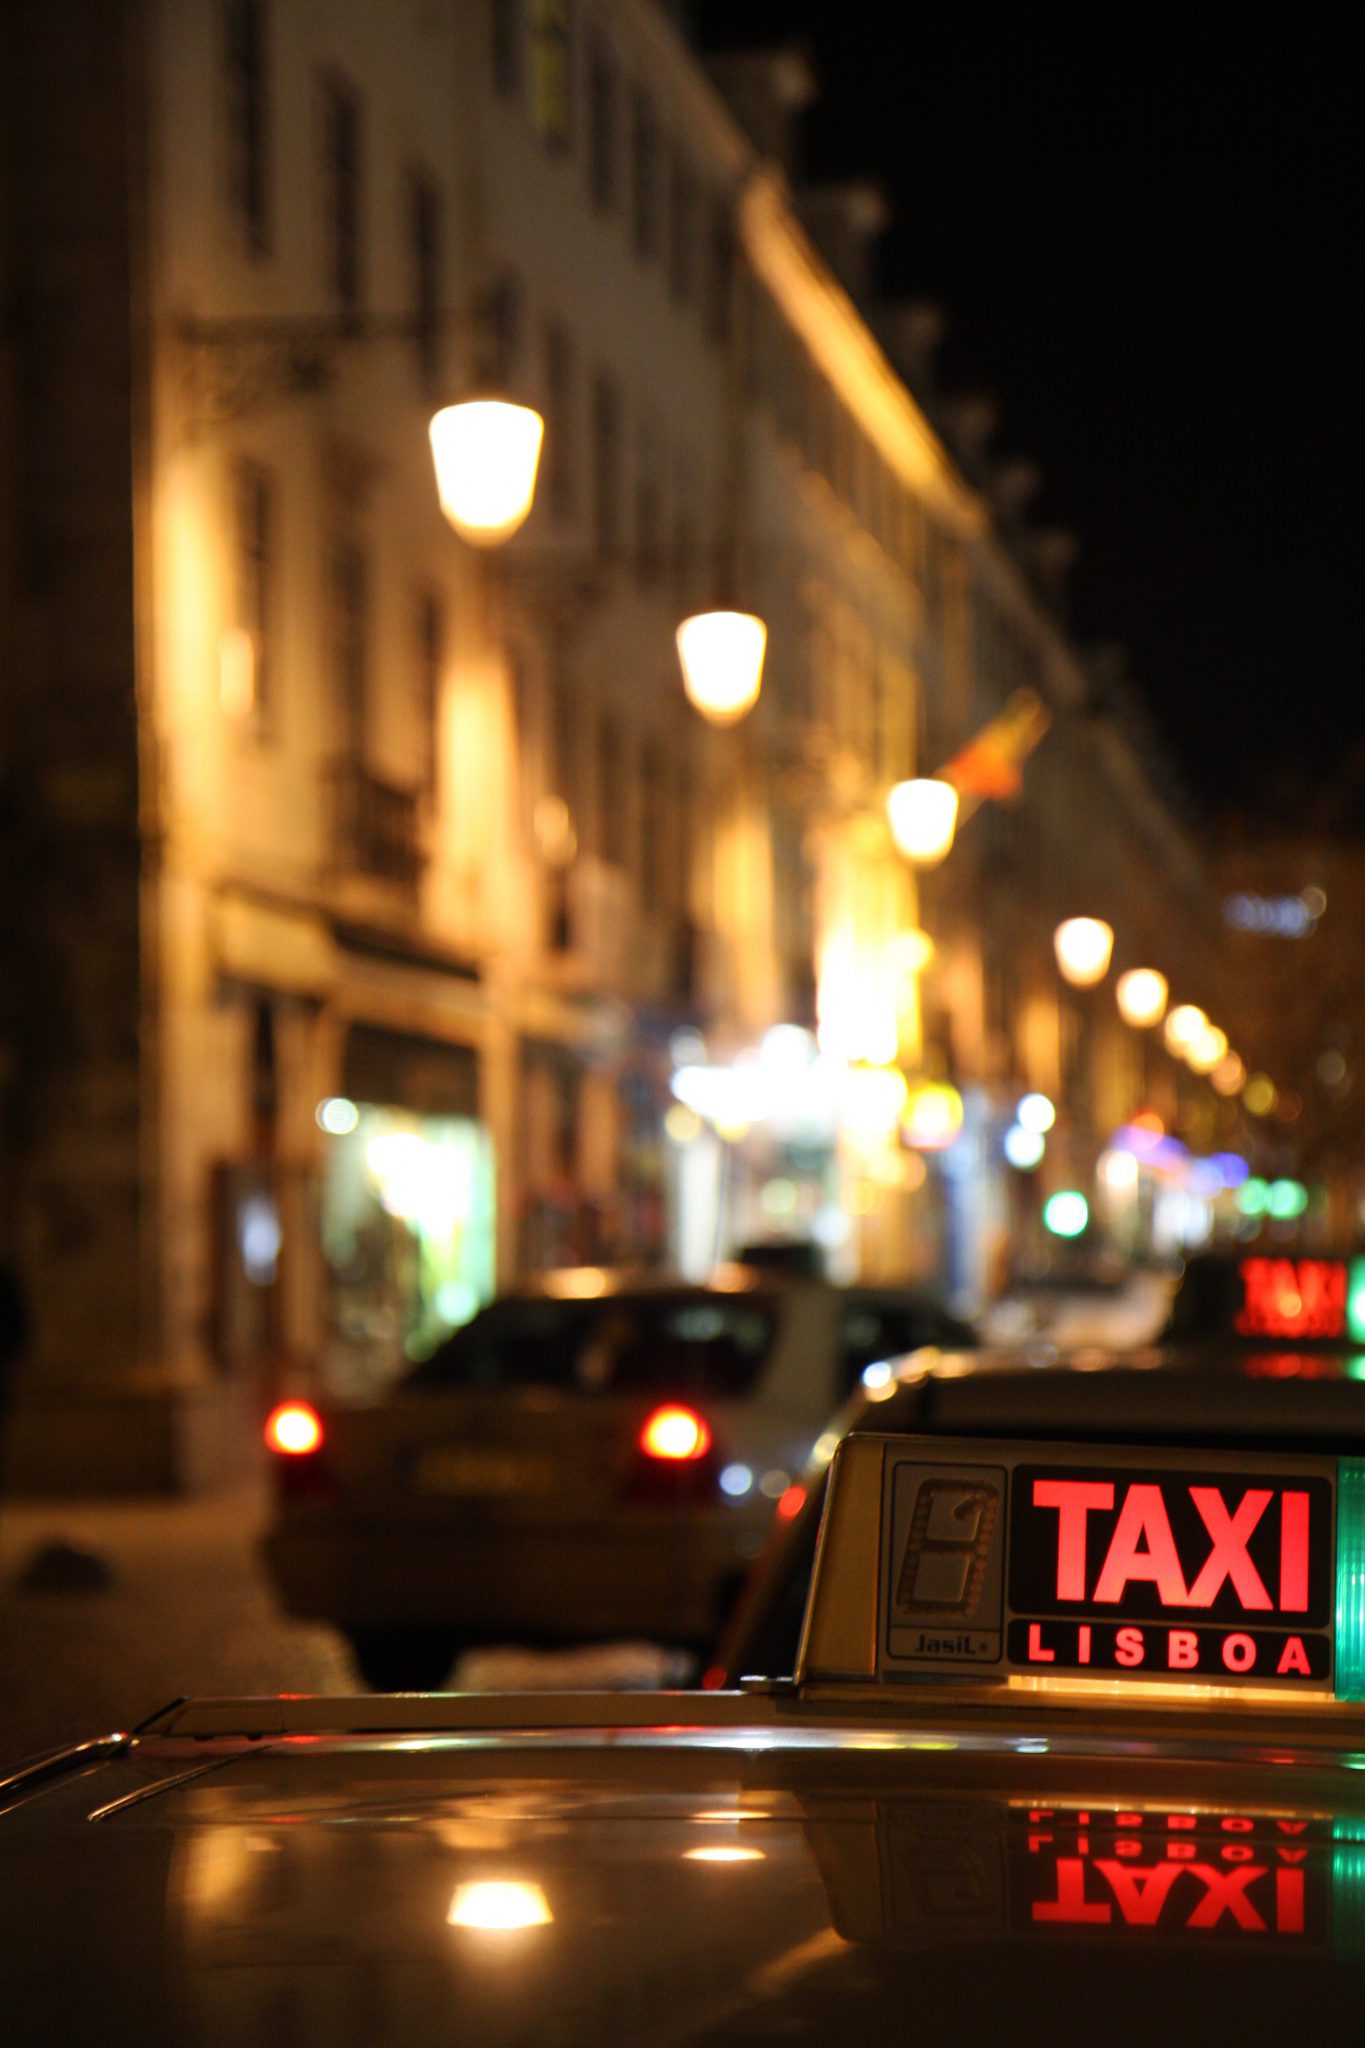 taxi-950078